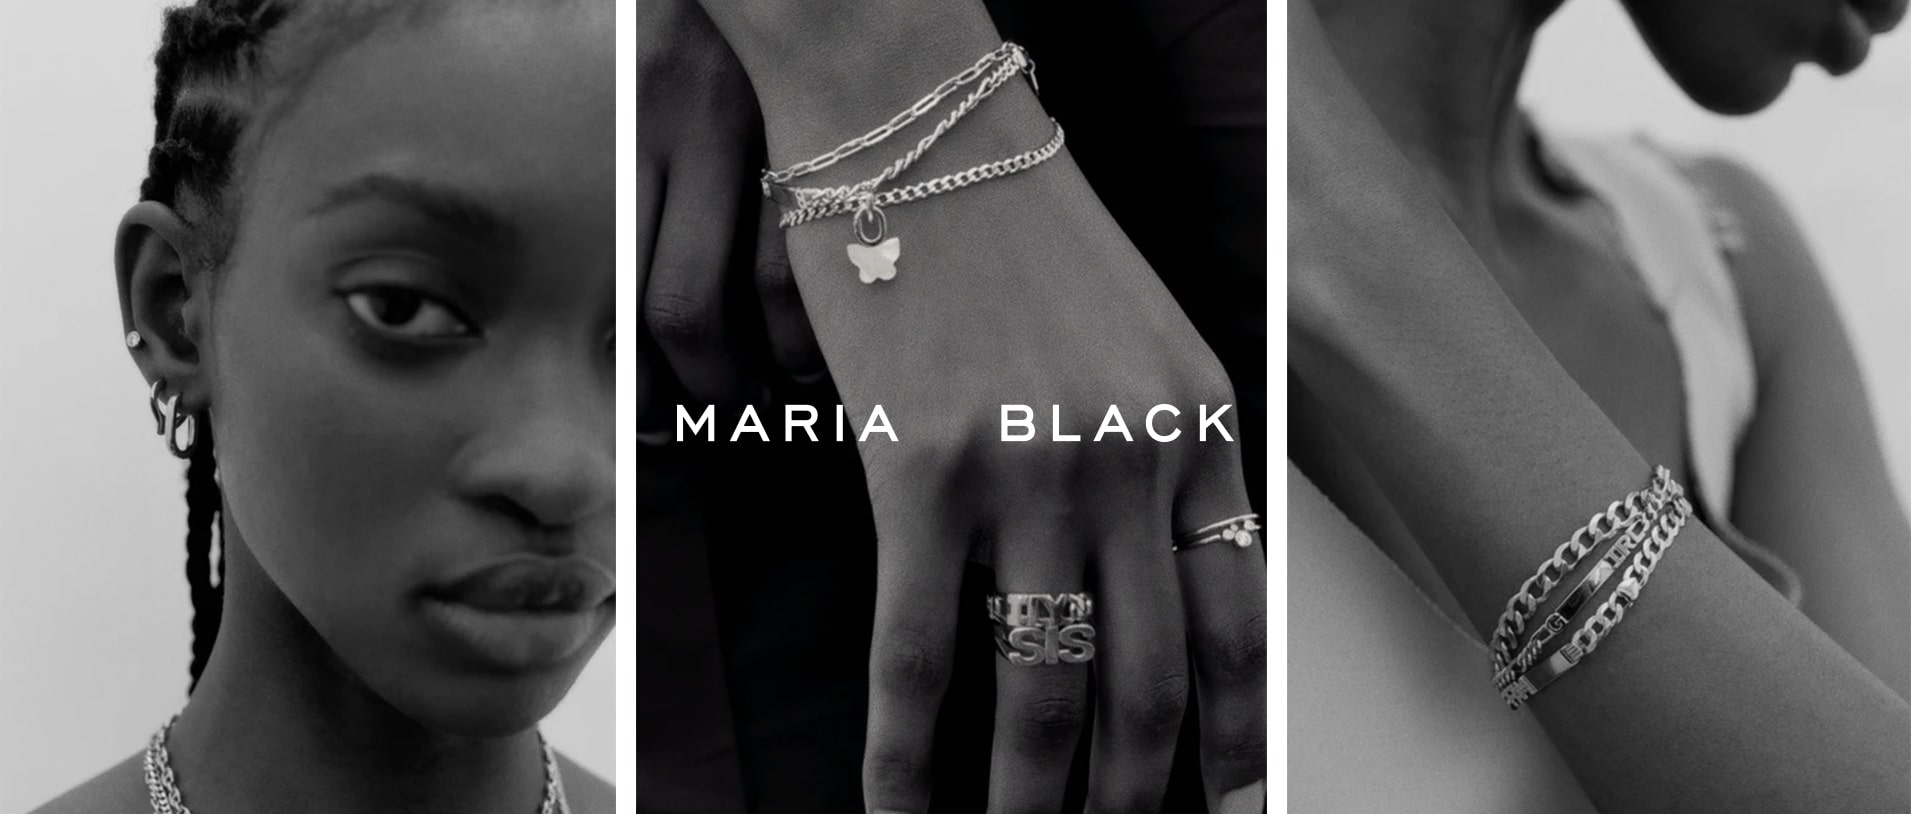 Maria Black Jewellery hos Vibholm guld og sølv